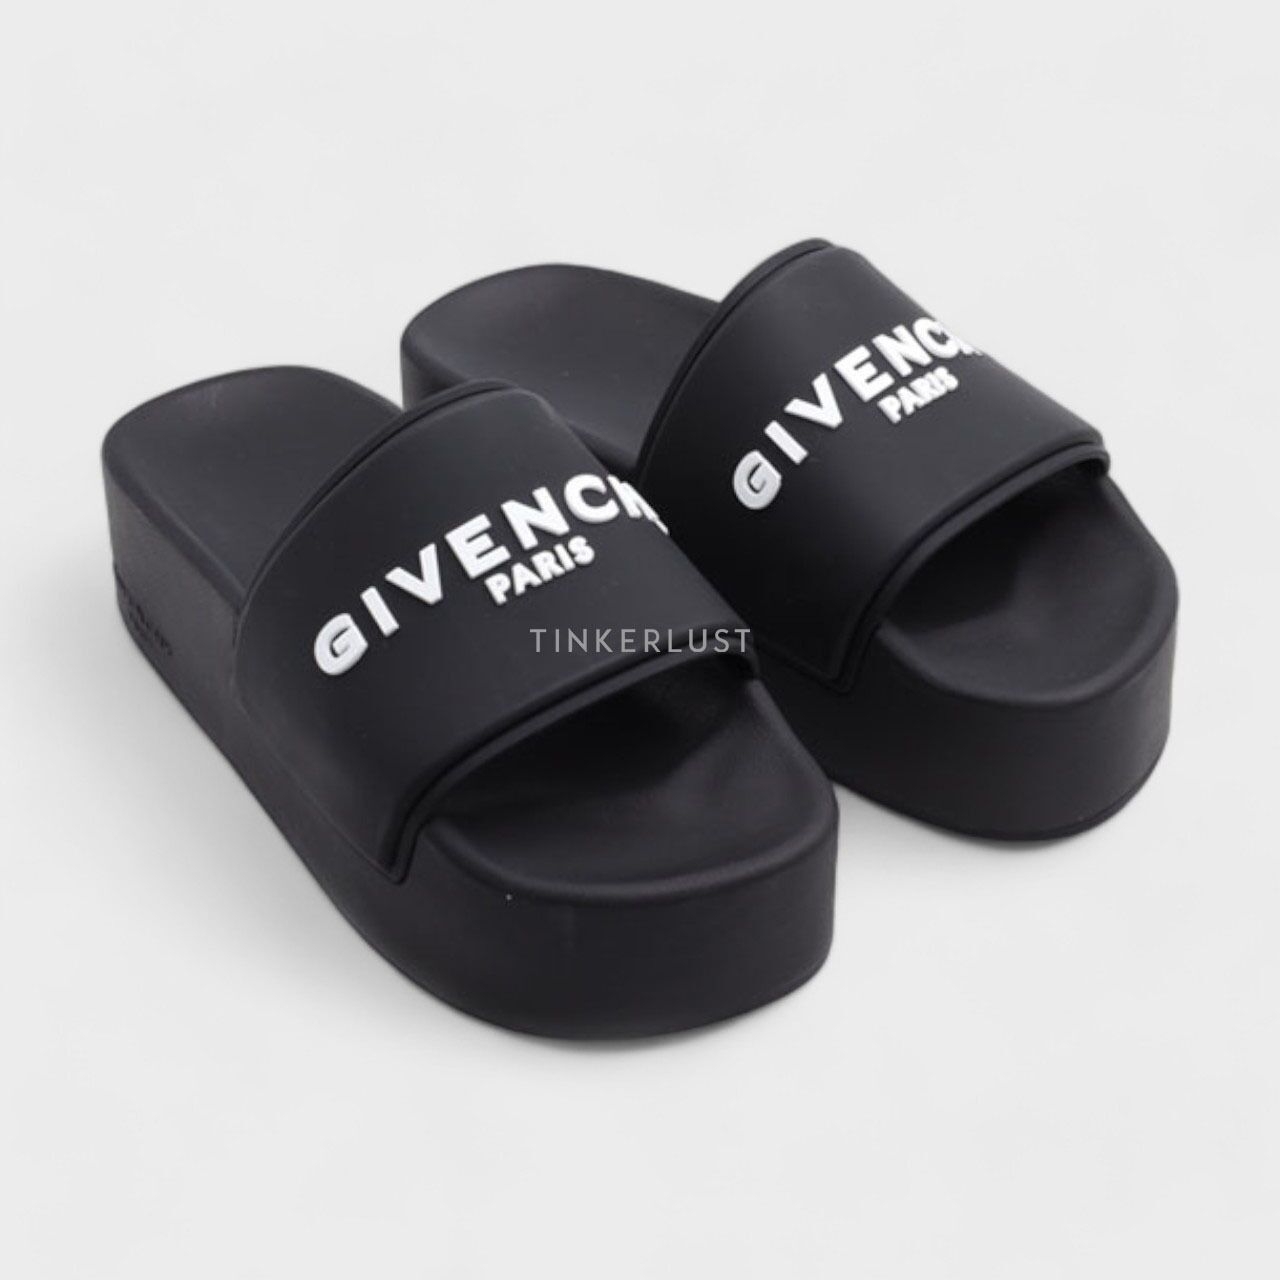 Givency Women Logo Platform Slides in Black Rubber Sandals